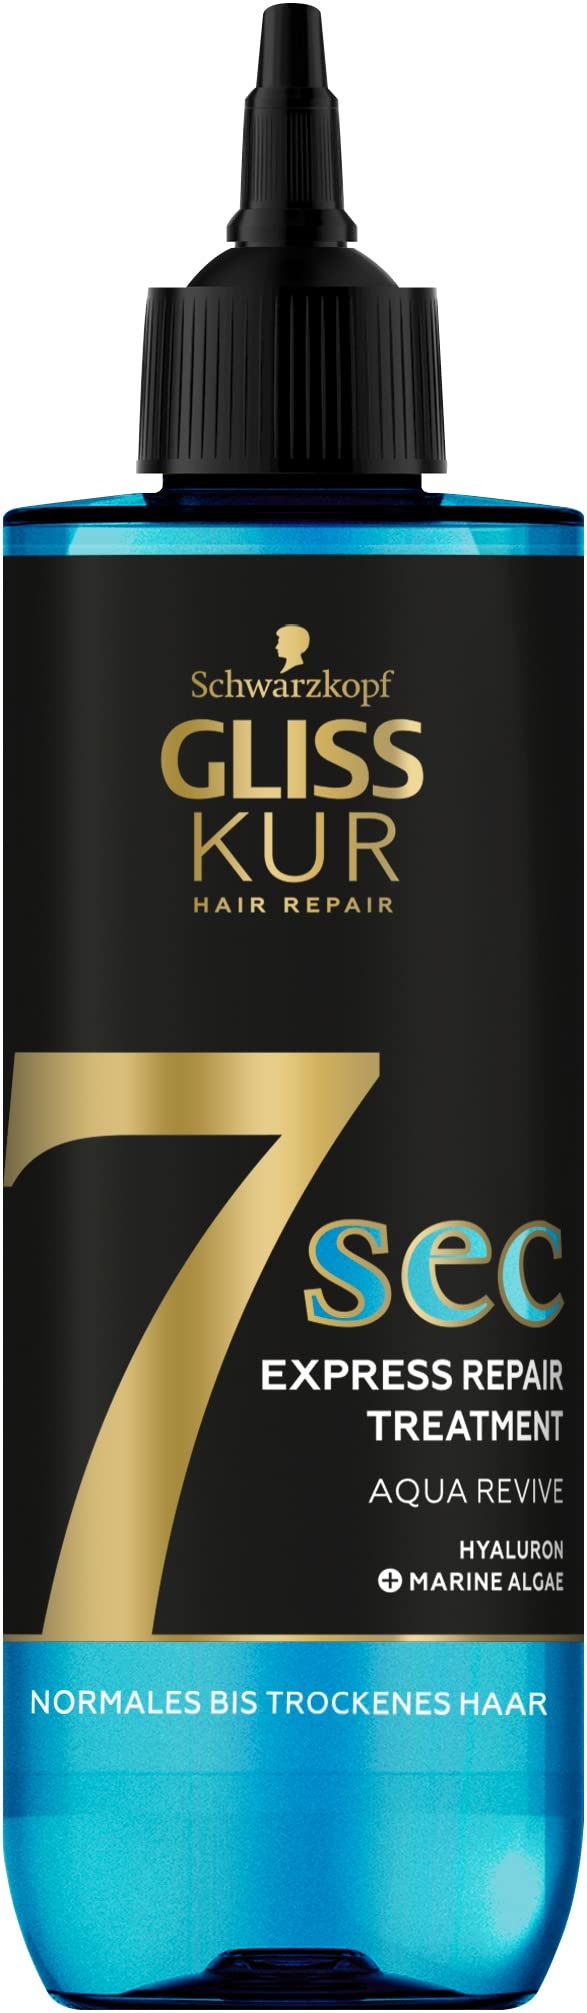 Gliss Kur 7 Sec Express-Repair-Kur Aqua Revive (200 ml), Haarkur sorgt für eine Extraportion Feuchtigkeit und gesunden Glanz in nur 7 Sekunden